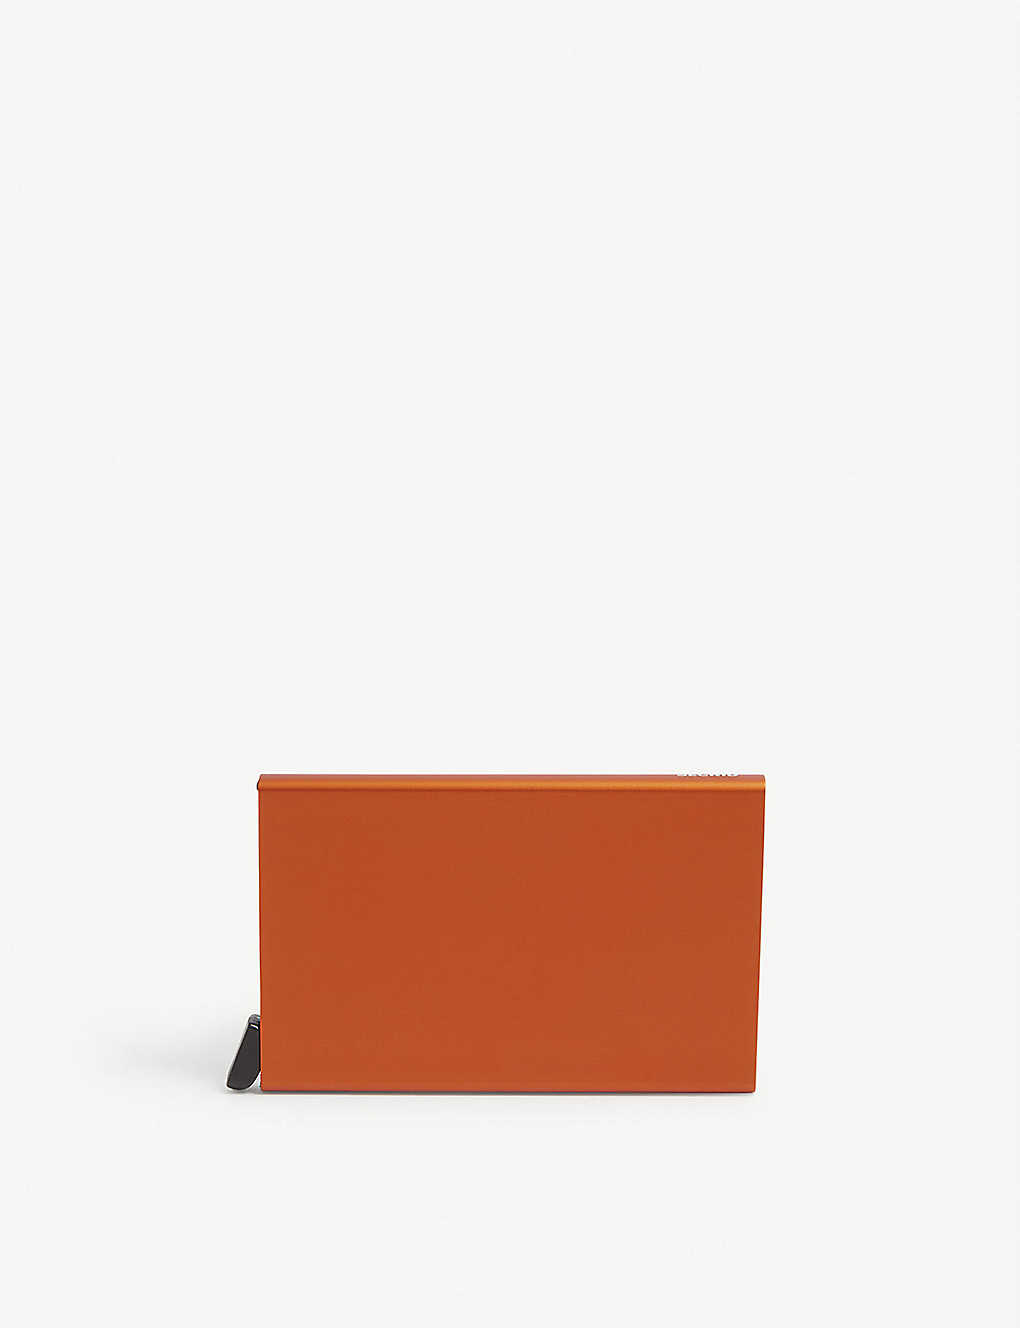 Secrid Cardprotector Aluminium Cardholder In Orange